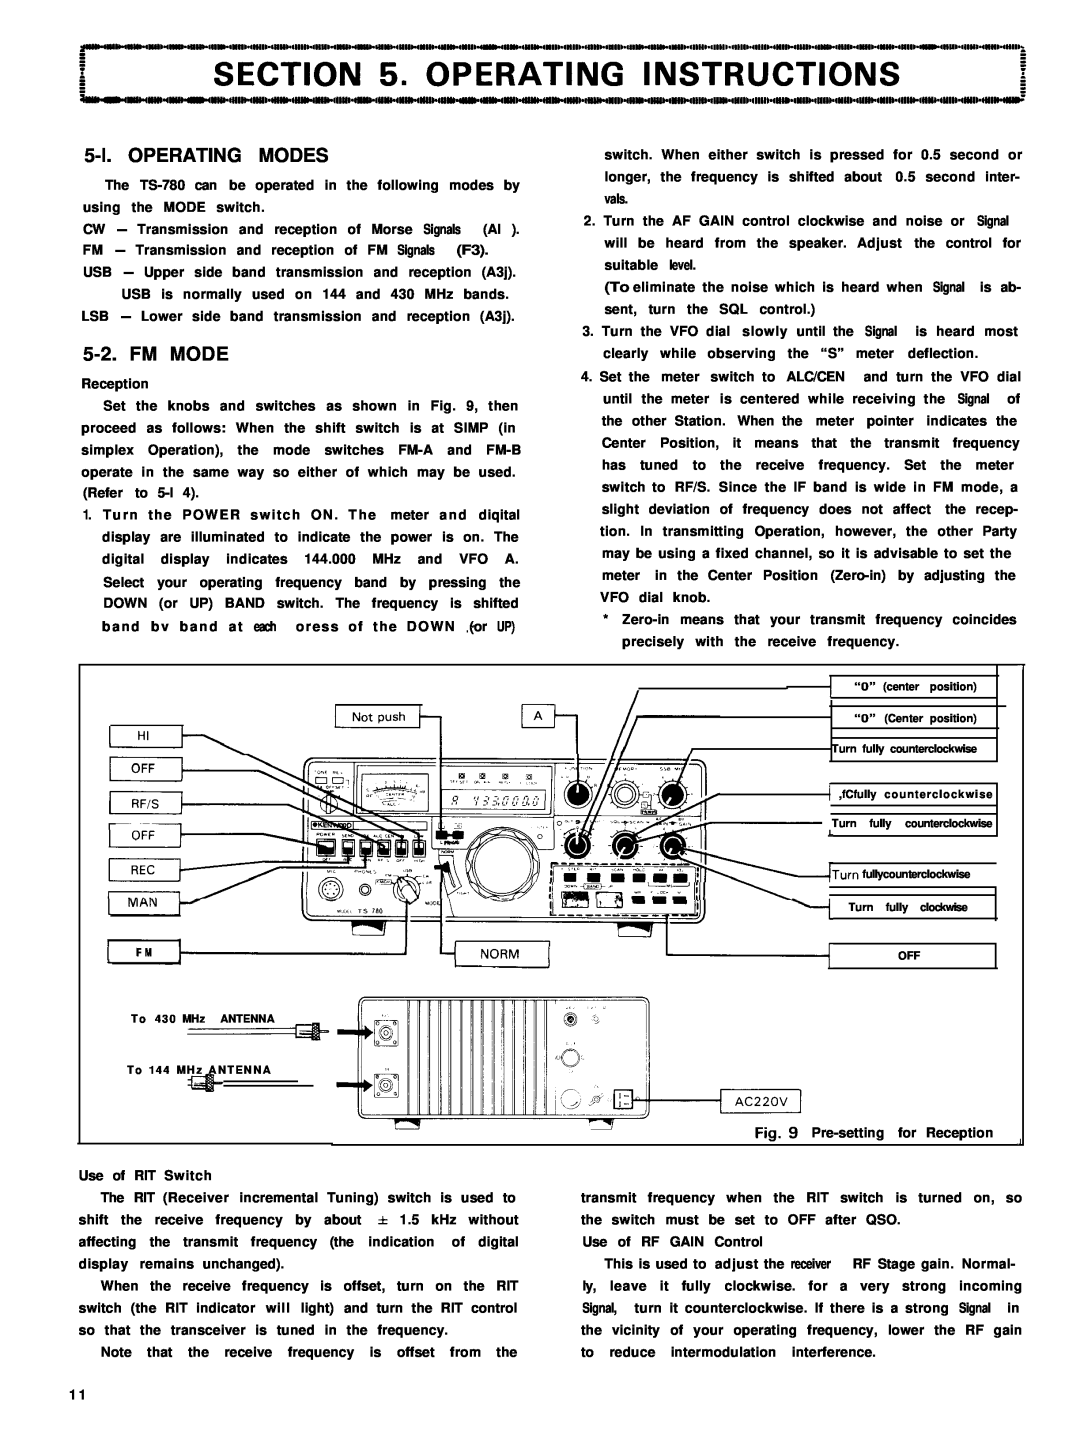 Kenwood TS-780 manual 5-l.OPERATING MODES, Fm Mode, Za 